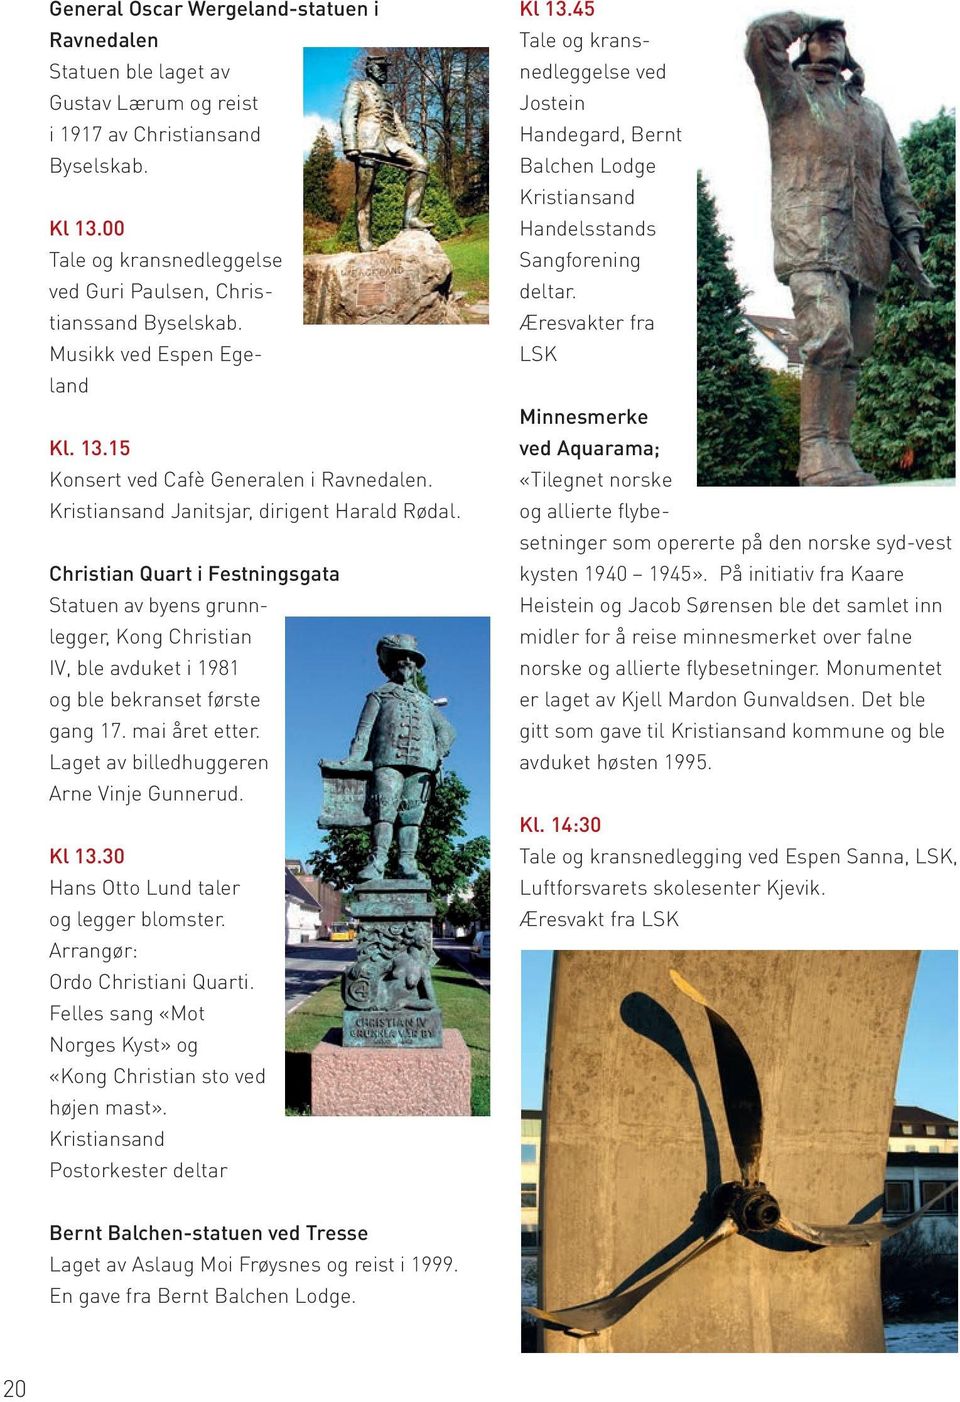 Christian Quart i Festningsgata Statuen av byens grunnlegger, Kong Christian IV, ble avduket i 1981 og ble bekranset første gang 17. mai året etter. Laget av billedhuggeren Arne Vinje Gunnerud. Kl 13.